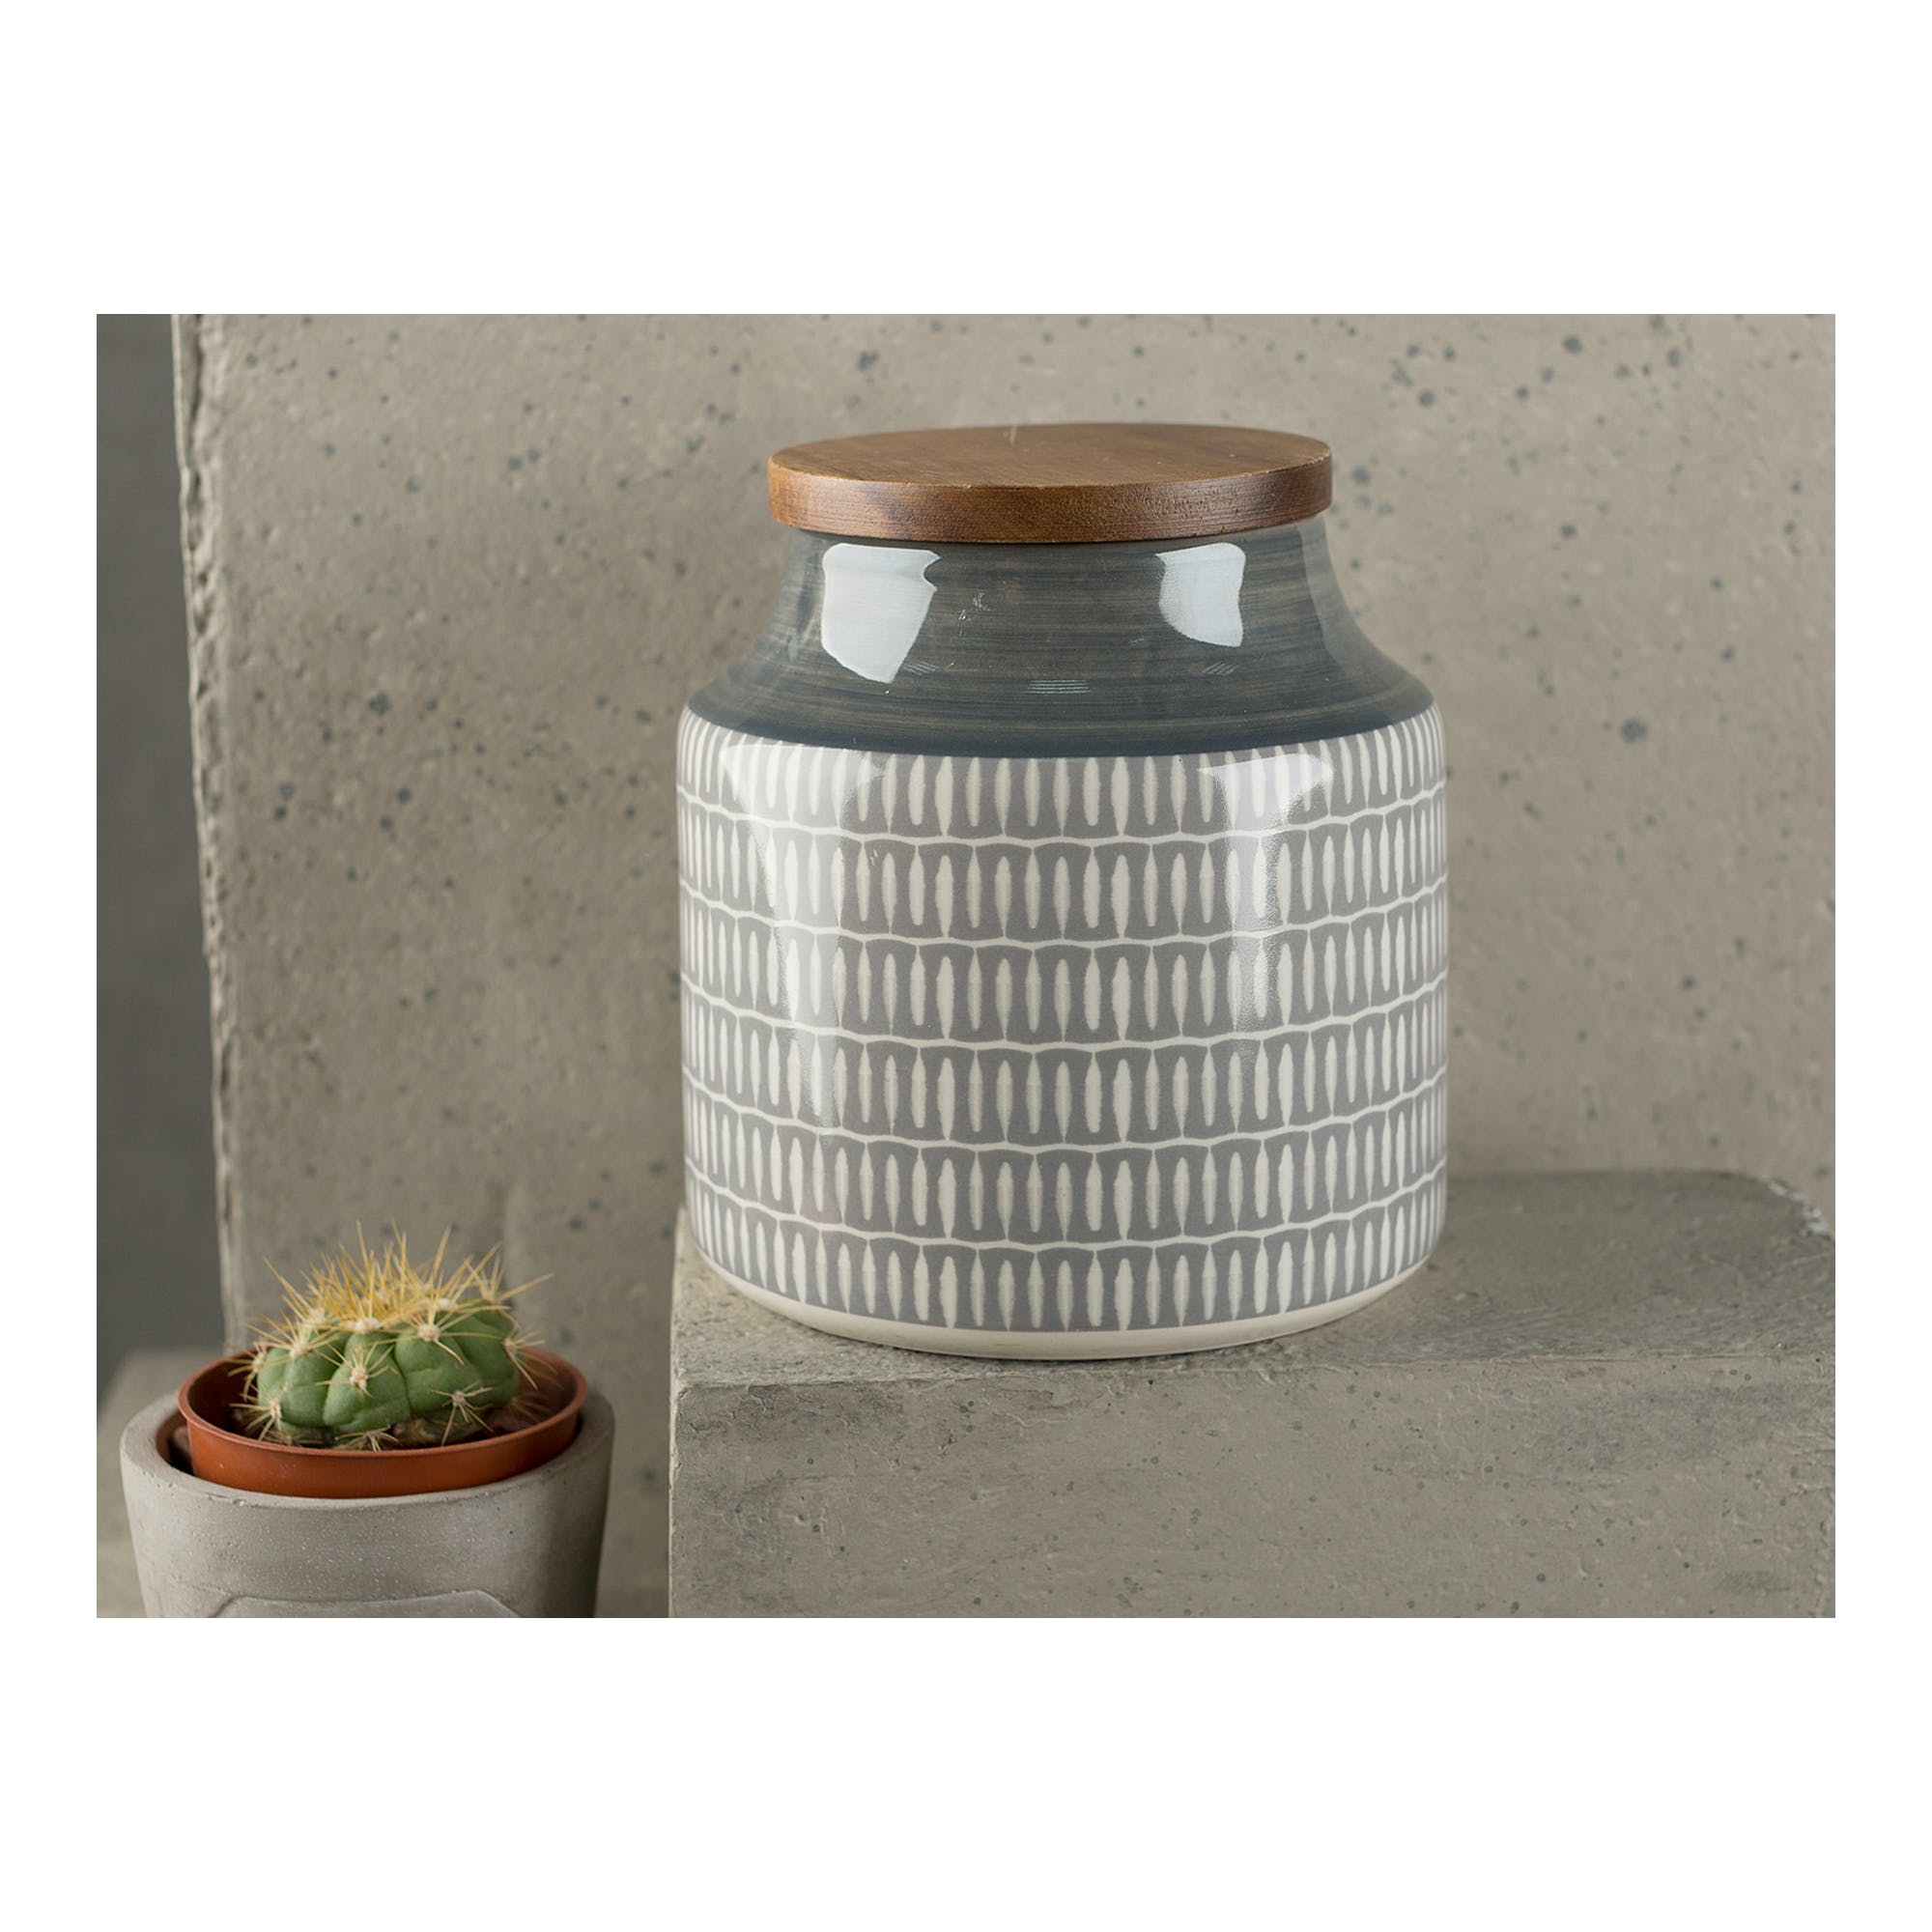 Mikasa Drift Grey Storage Cannister Jar - The Cooks Cupboard Ltd